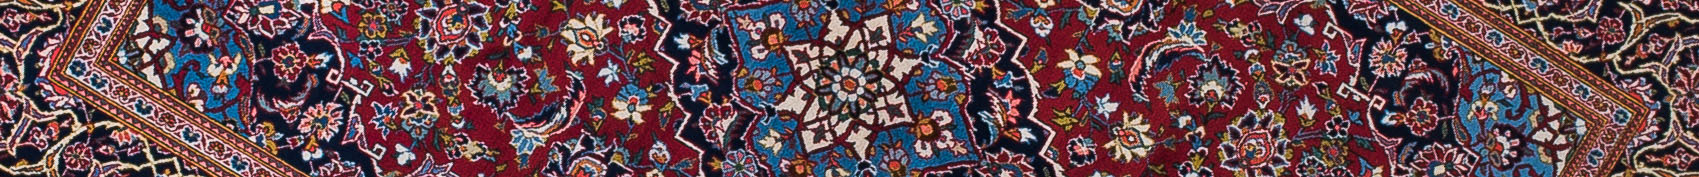 Kashan Persian Carpet Rug N1Carpet Canada Montreal Tapis Persan 1650